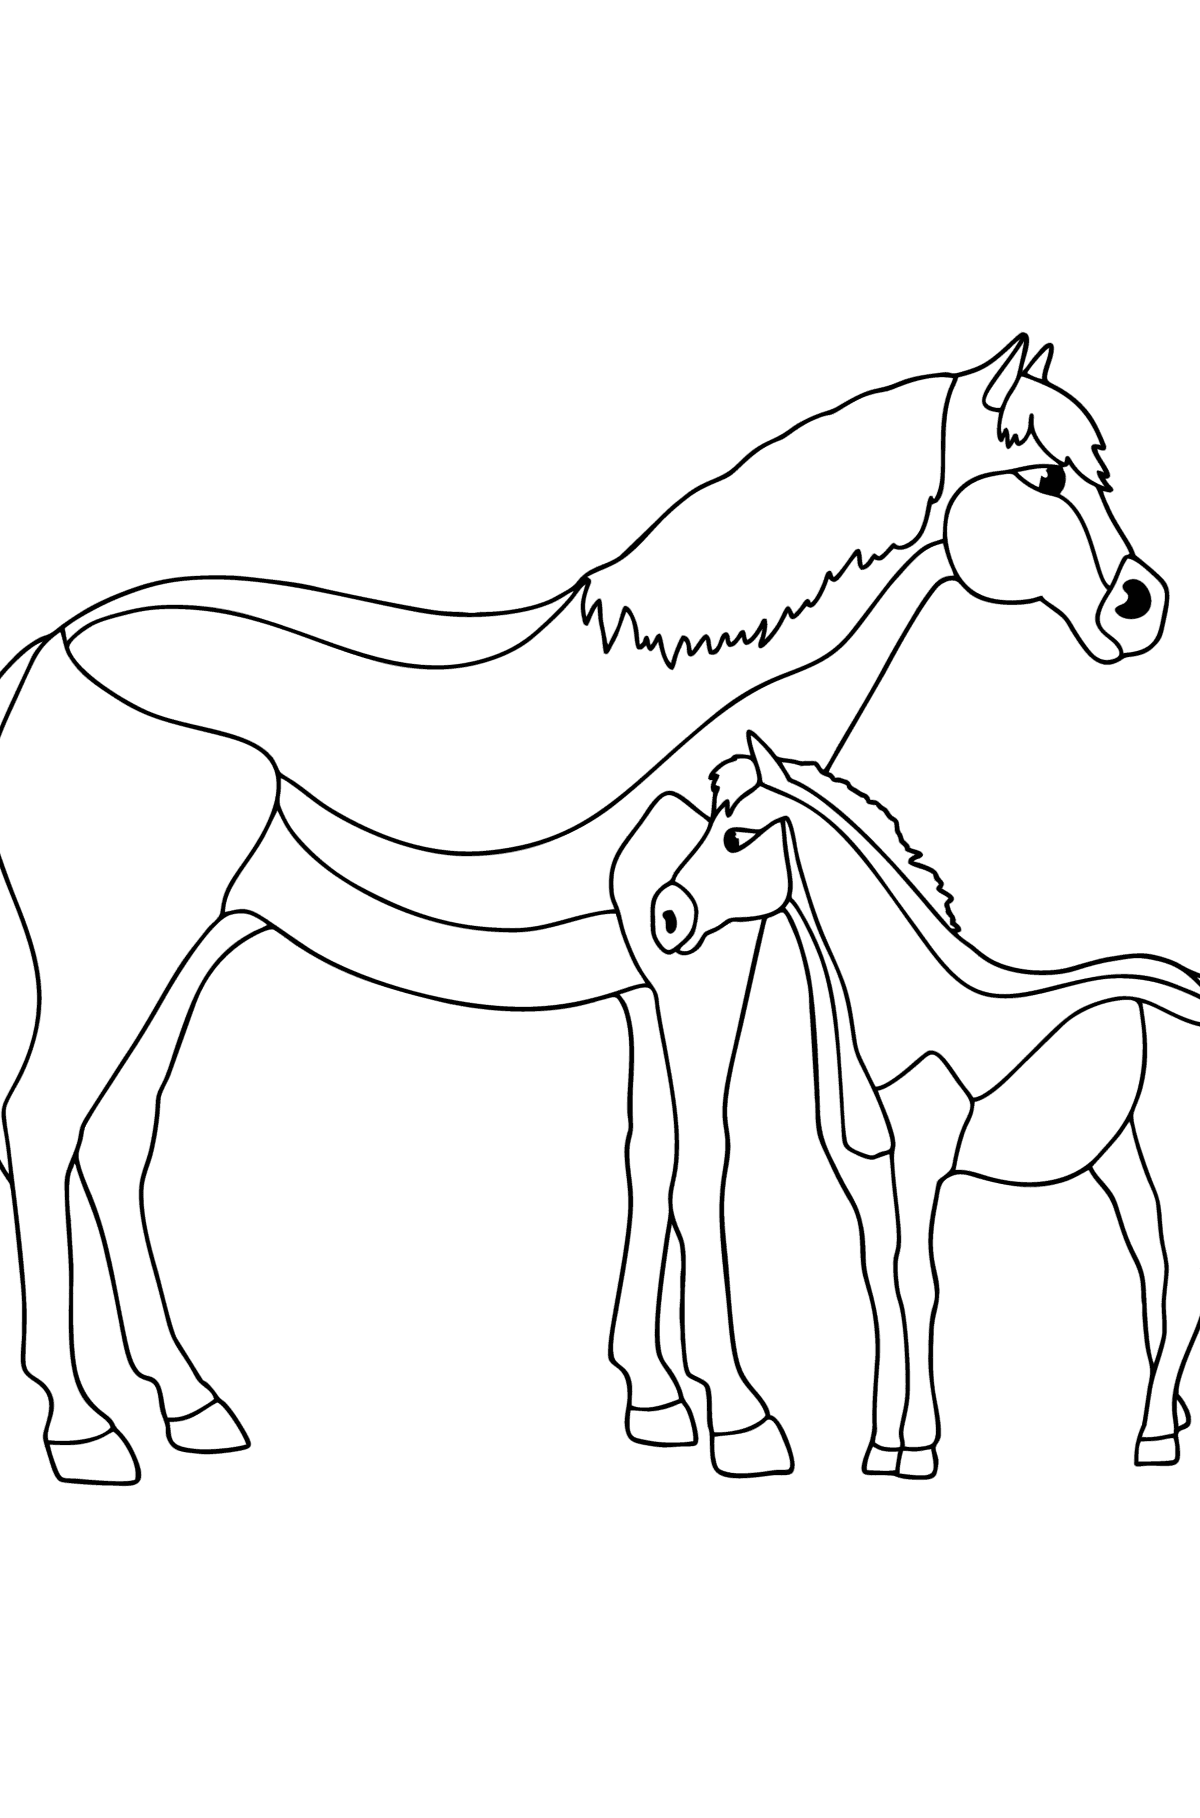 Tegning til fargelegging Hest og føll - Tegninger til fargelegging for barn